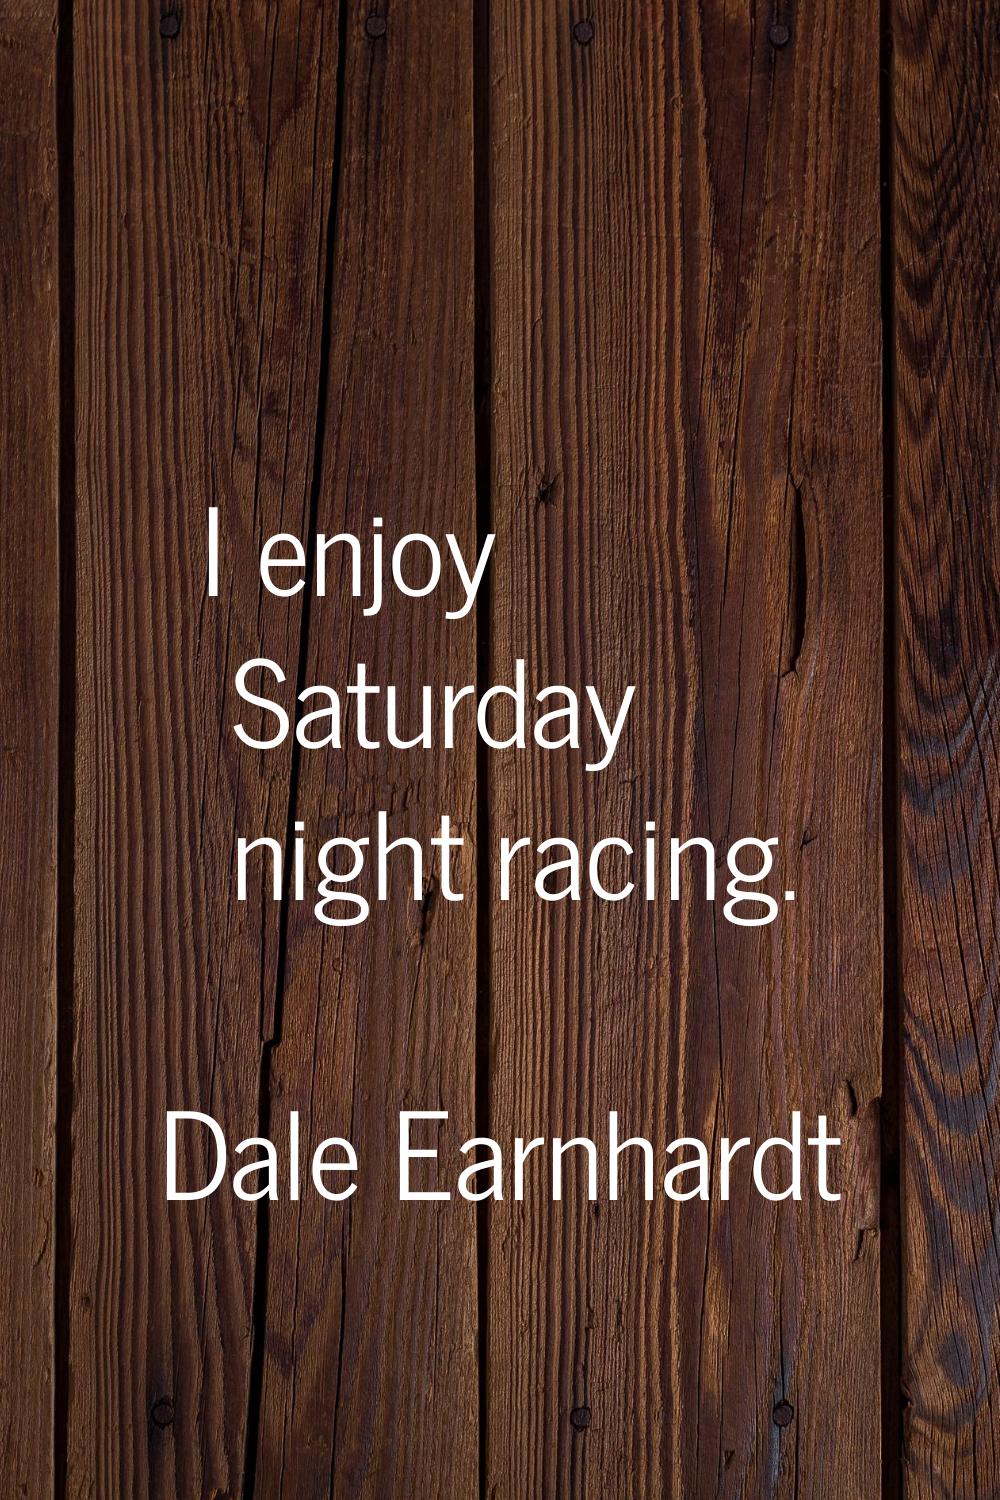 I enjoy Saturday night racing.